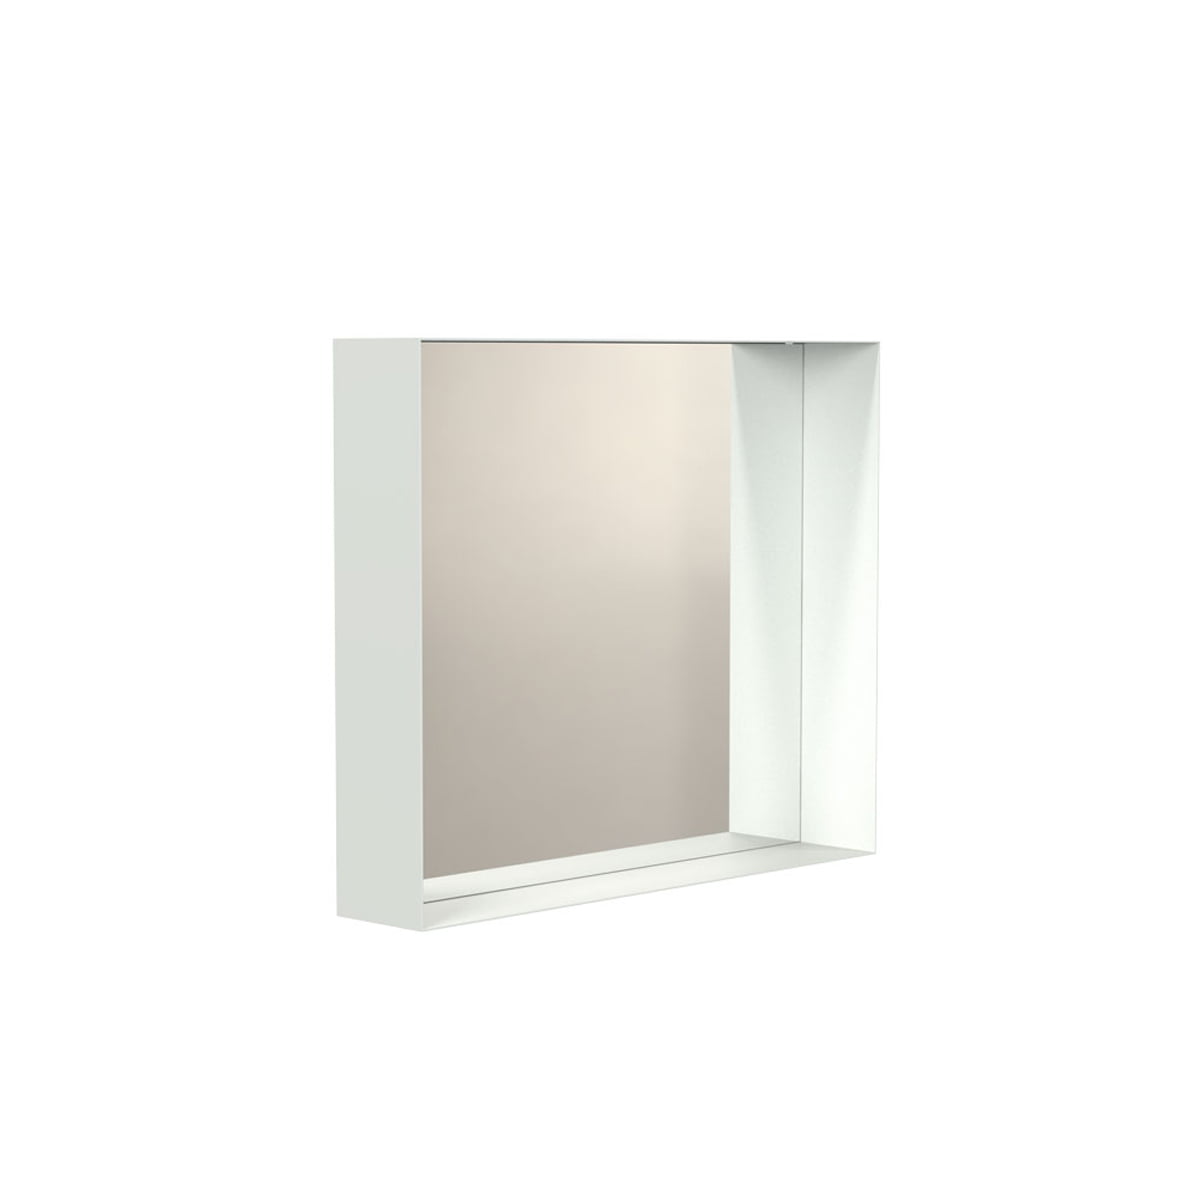 FROST - Unu Wandspiegel 4127 mit Rahmen, 50 x 60 cm, weiß